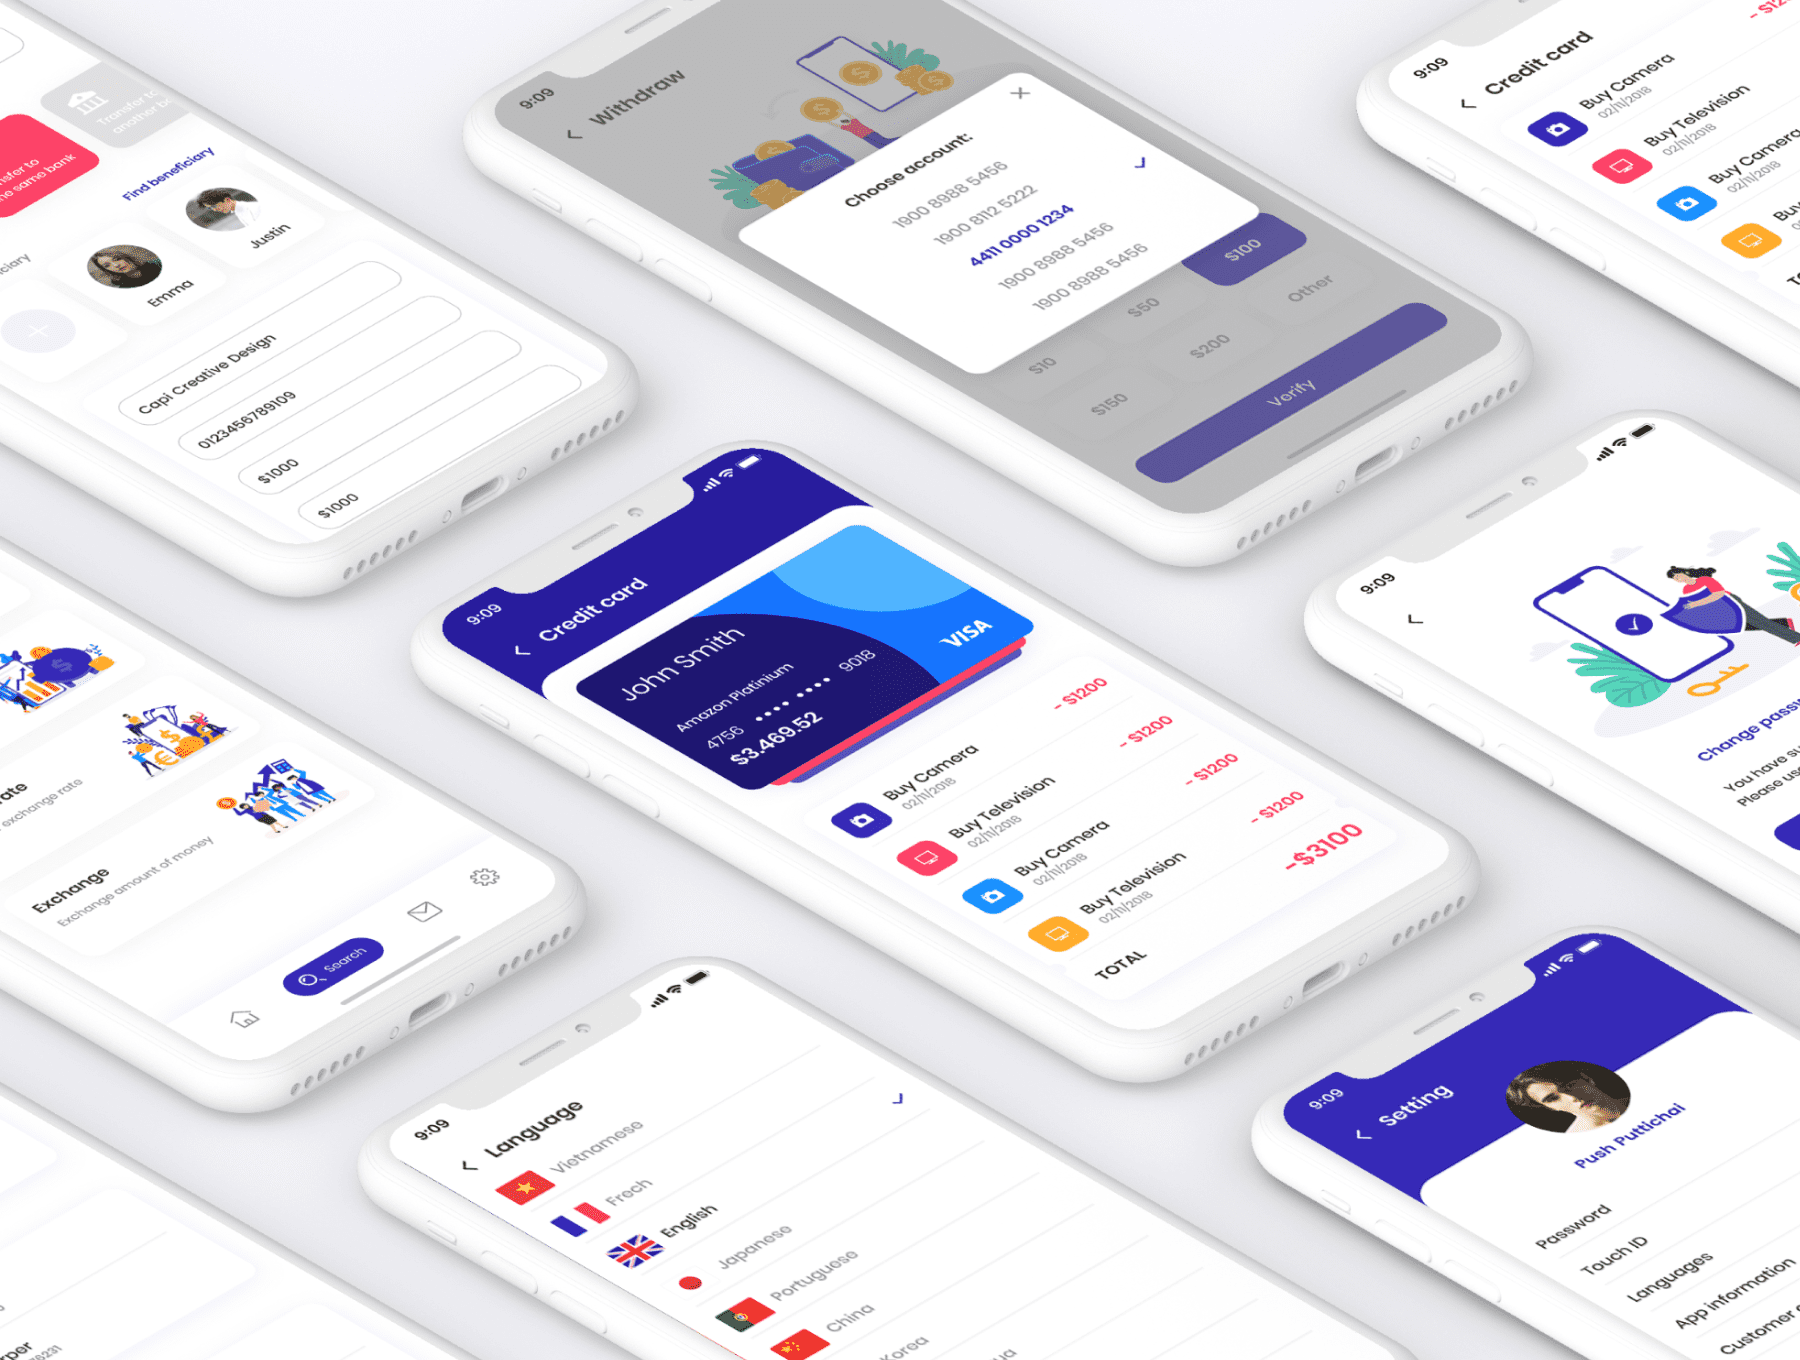 cobank-finance-mobile-app-ui-kit 7.png